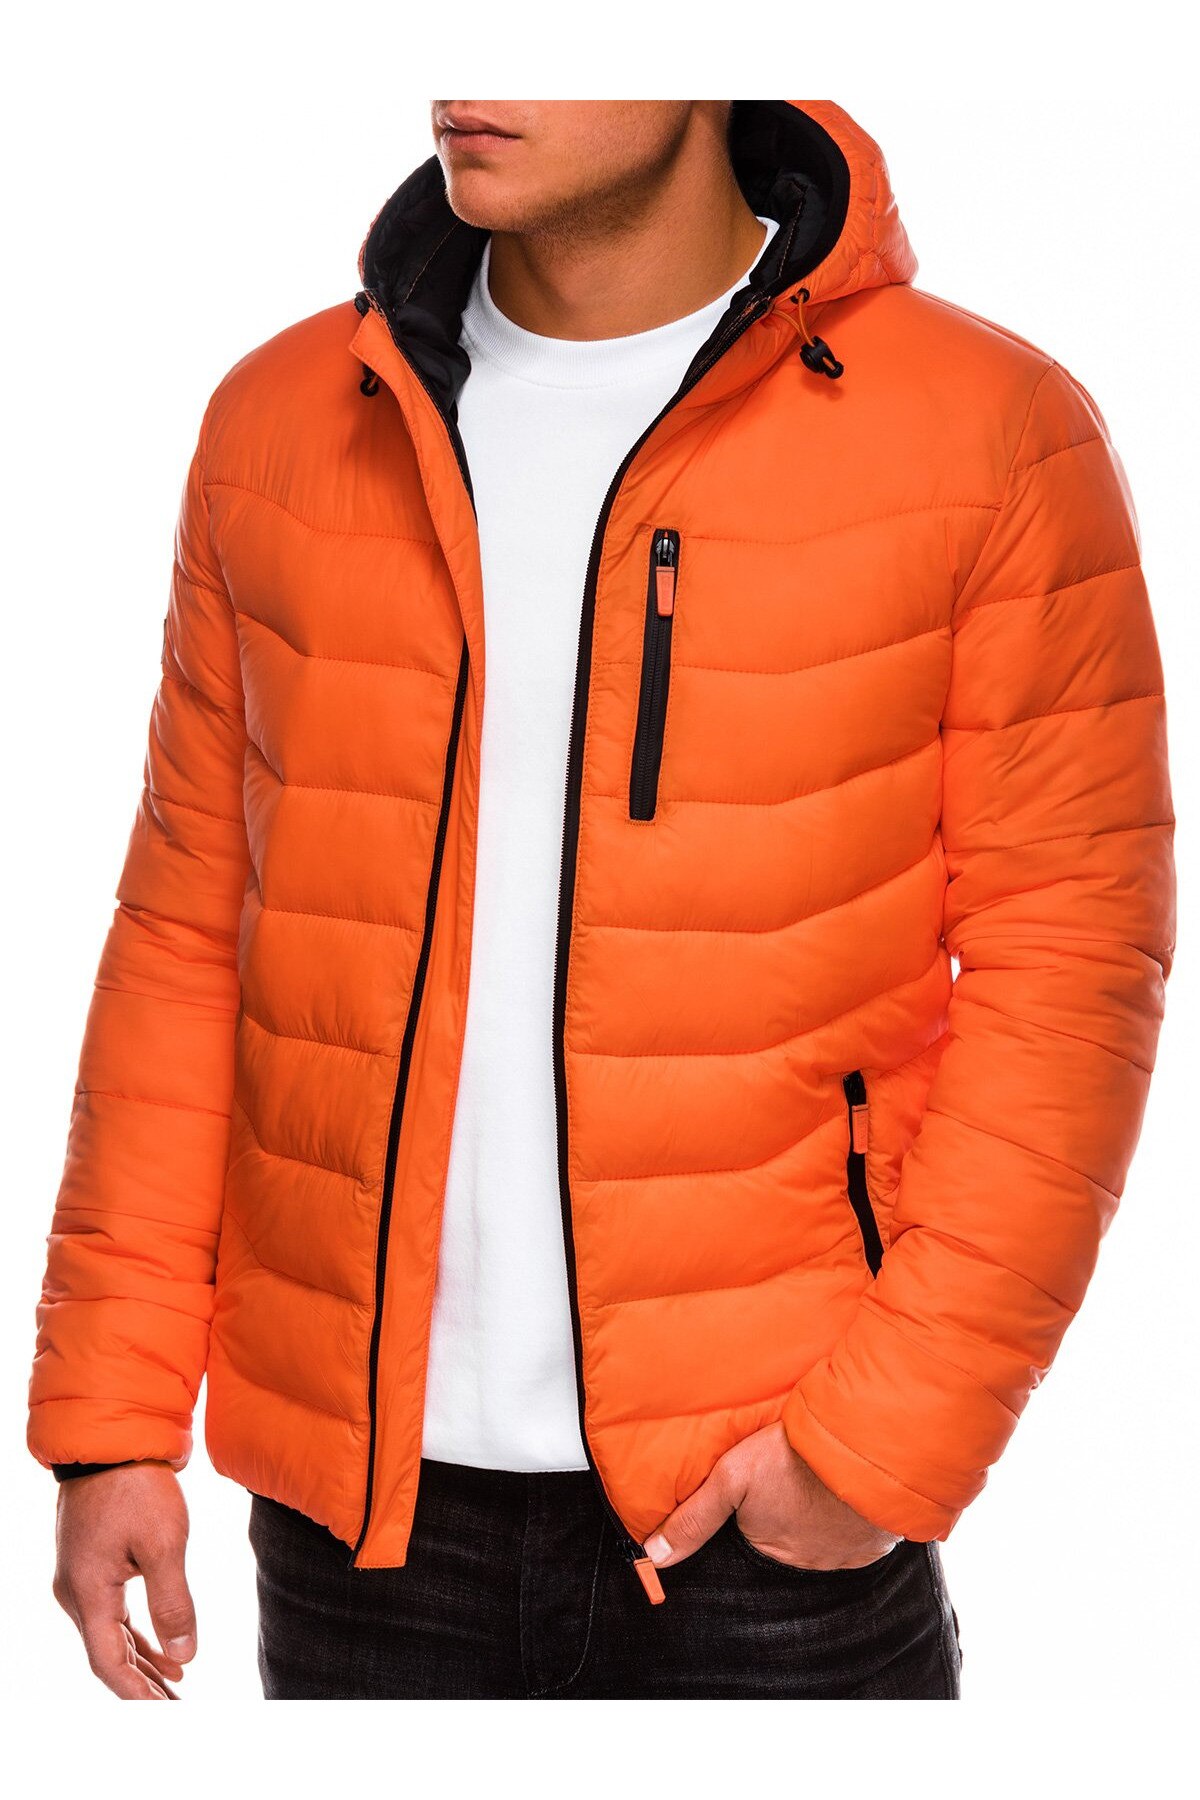 Куртка мужская сити. Sublevel large куртка мужская оранжевая. Superdry куртка оранжевый мужская. Оранжевая куртка Uniqlo мужская демисезонная. DSG-8310-141 куртка мужская оранжевая.